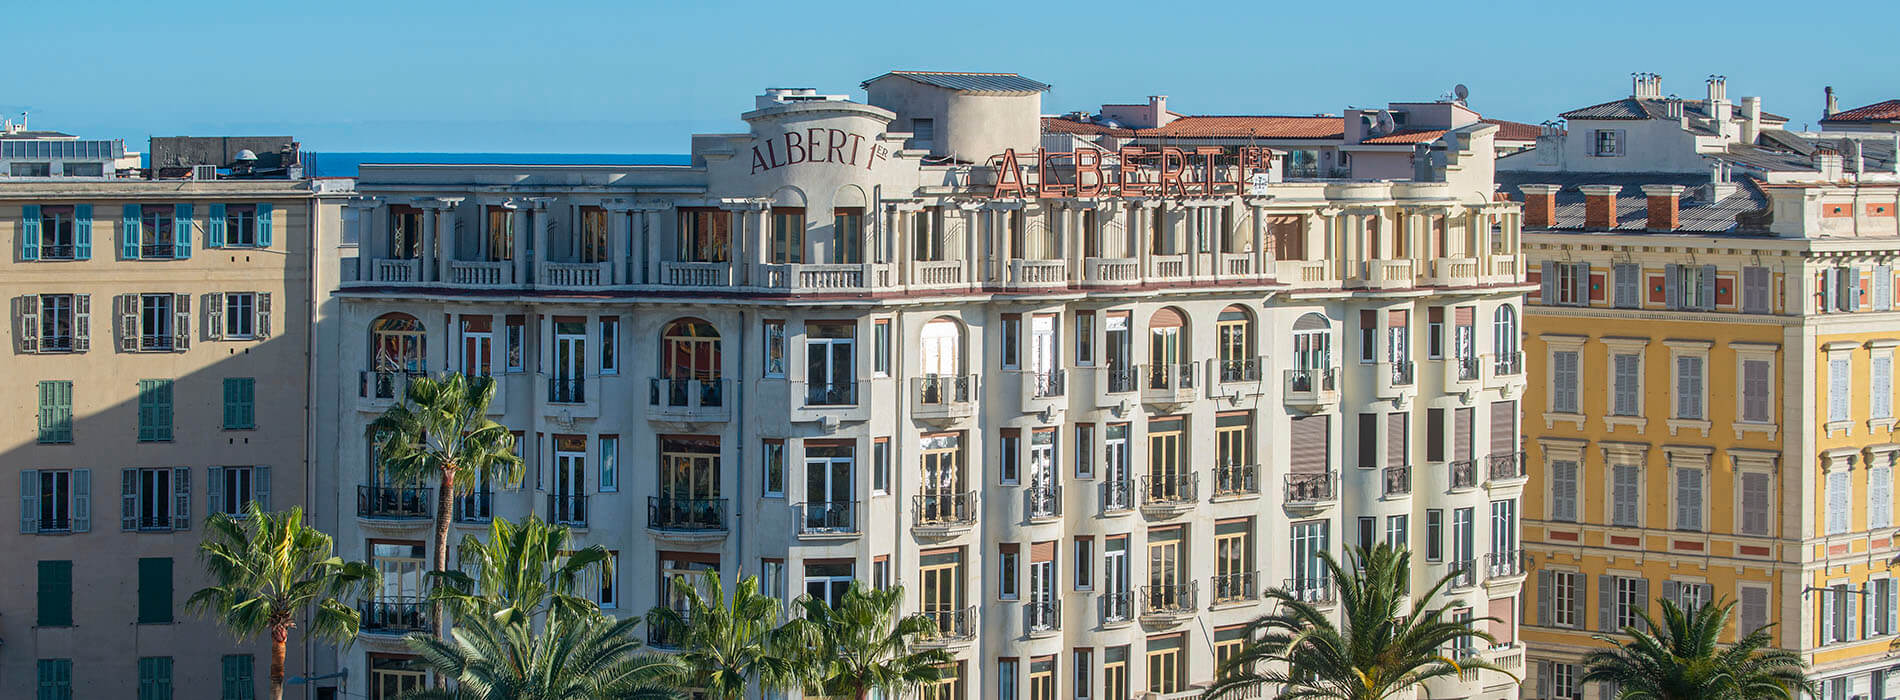 Hotel Albert 1er Nice